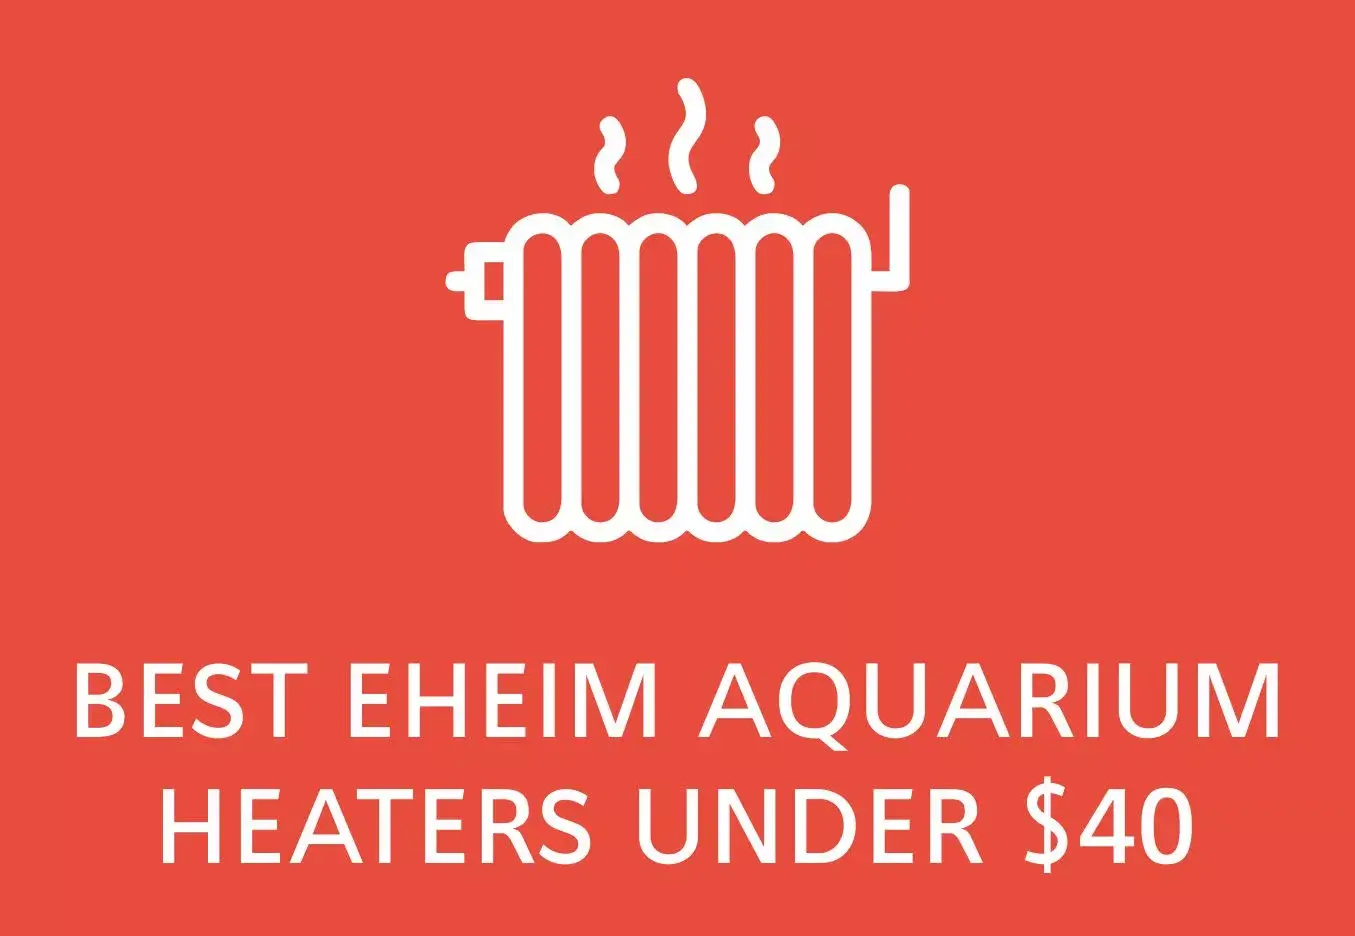 Best Eheim aquarium heaters under $40 